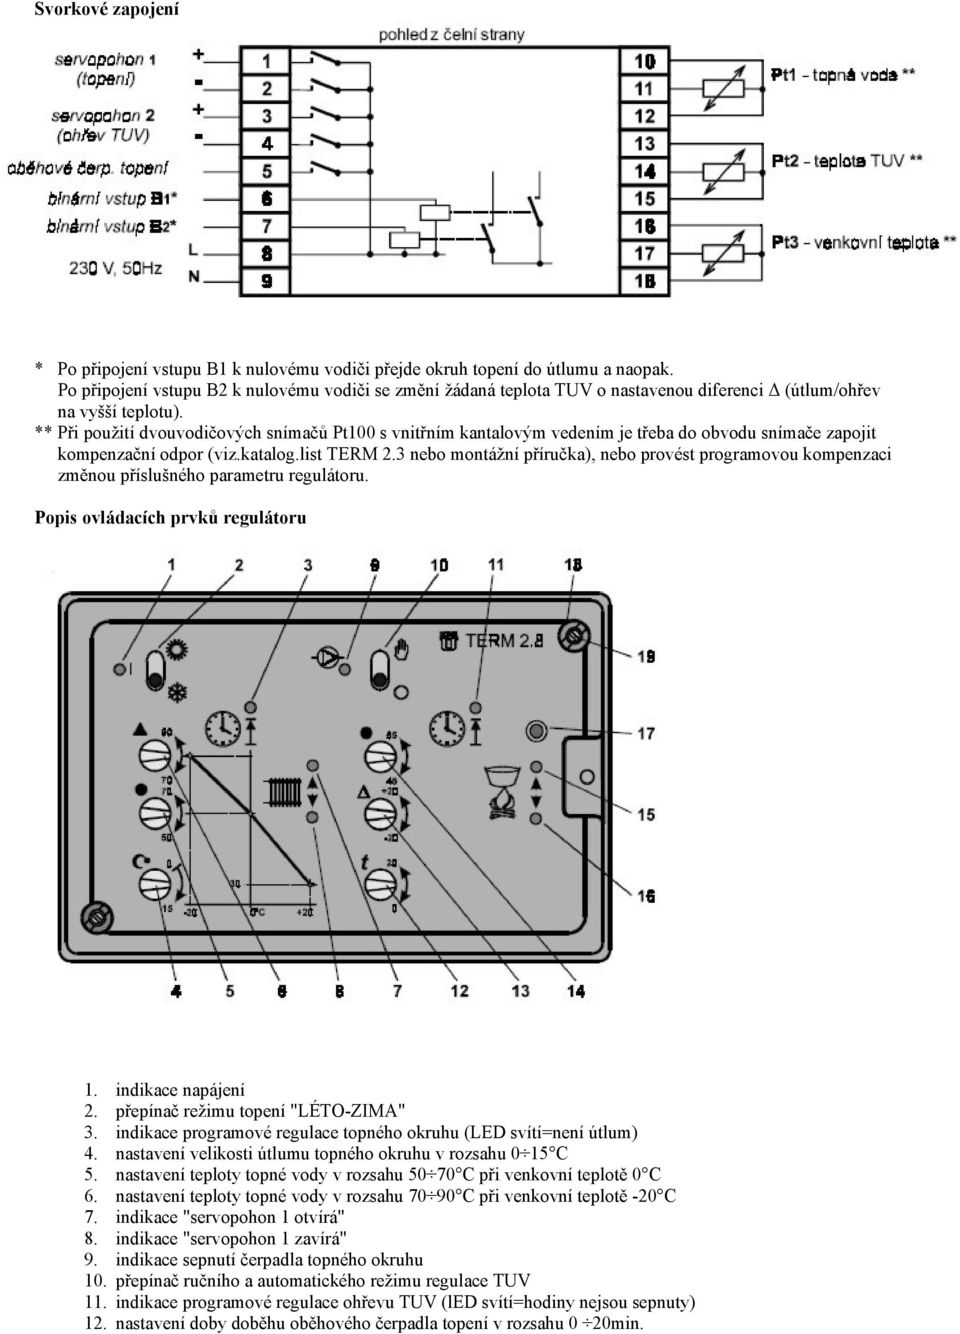 ** Při použití dvouvodičových snímačů Pt100 s vnitřním kantalovým vedením je třeba do obvodu snímače zapojit kompenzační odpor (viz.katalog.list TERM 2.